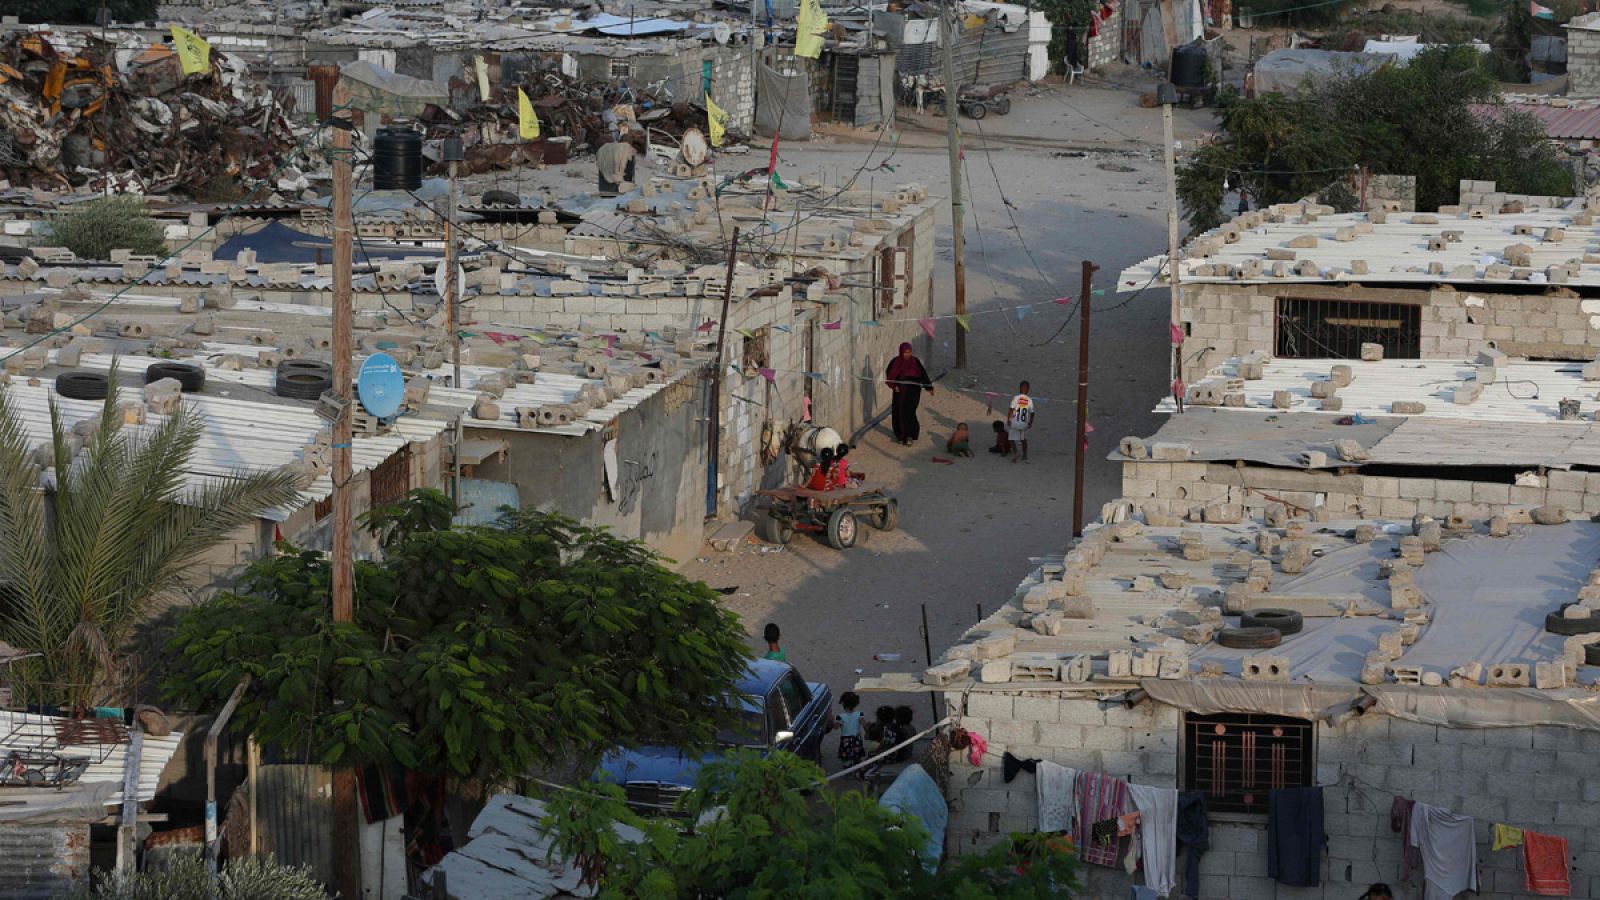 Vista general de un barrio empobrecido en el campo de refugiados Khan Younis al sur de la Franja de Gaza